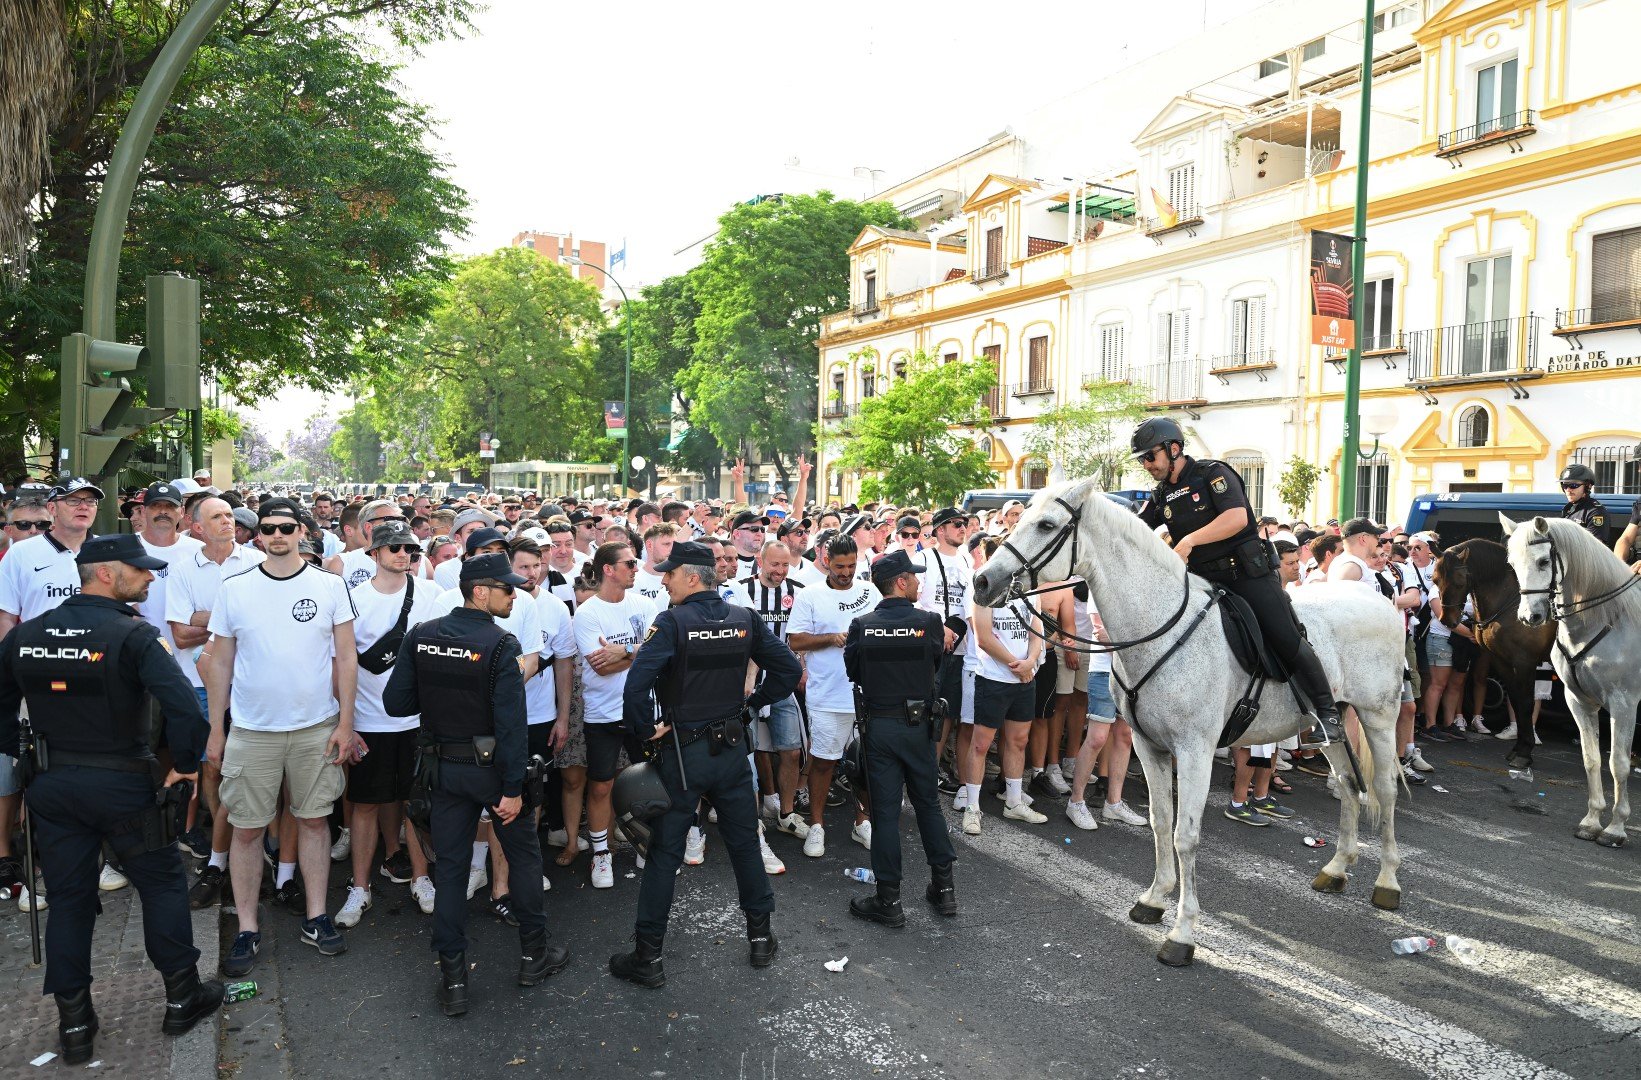 Гледките от улиците на Севиля още през деня преди мача бяха колоритни и впечатляващи. Градът е свикнал да приема туристи, но 150 000 души да се стекат в един ден...